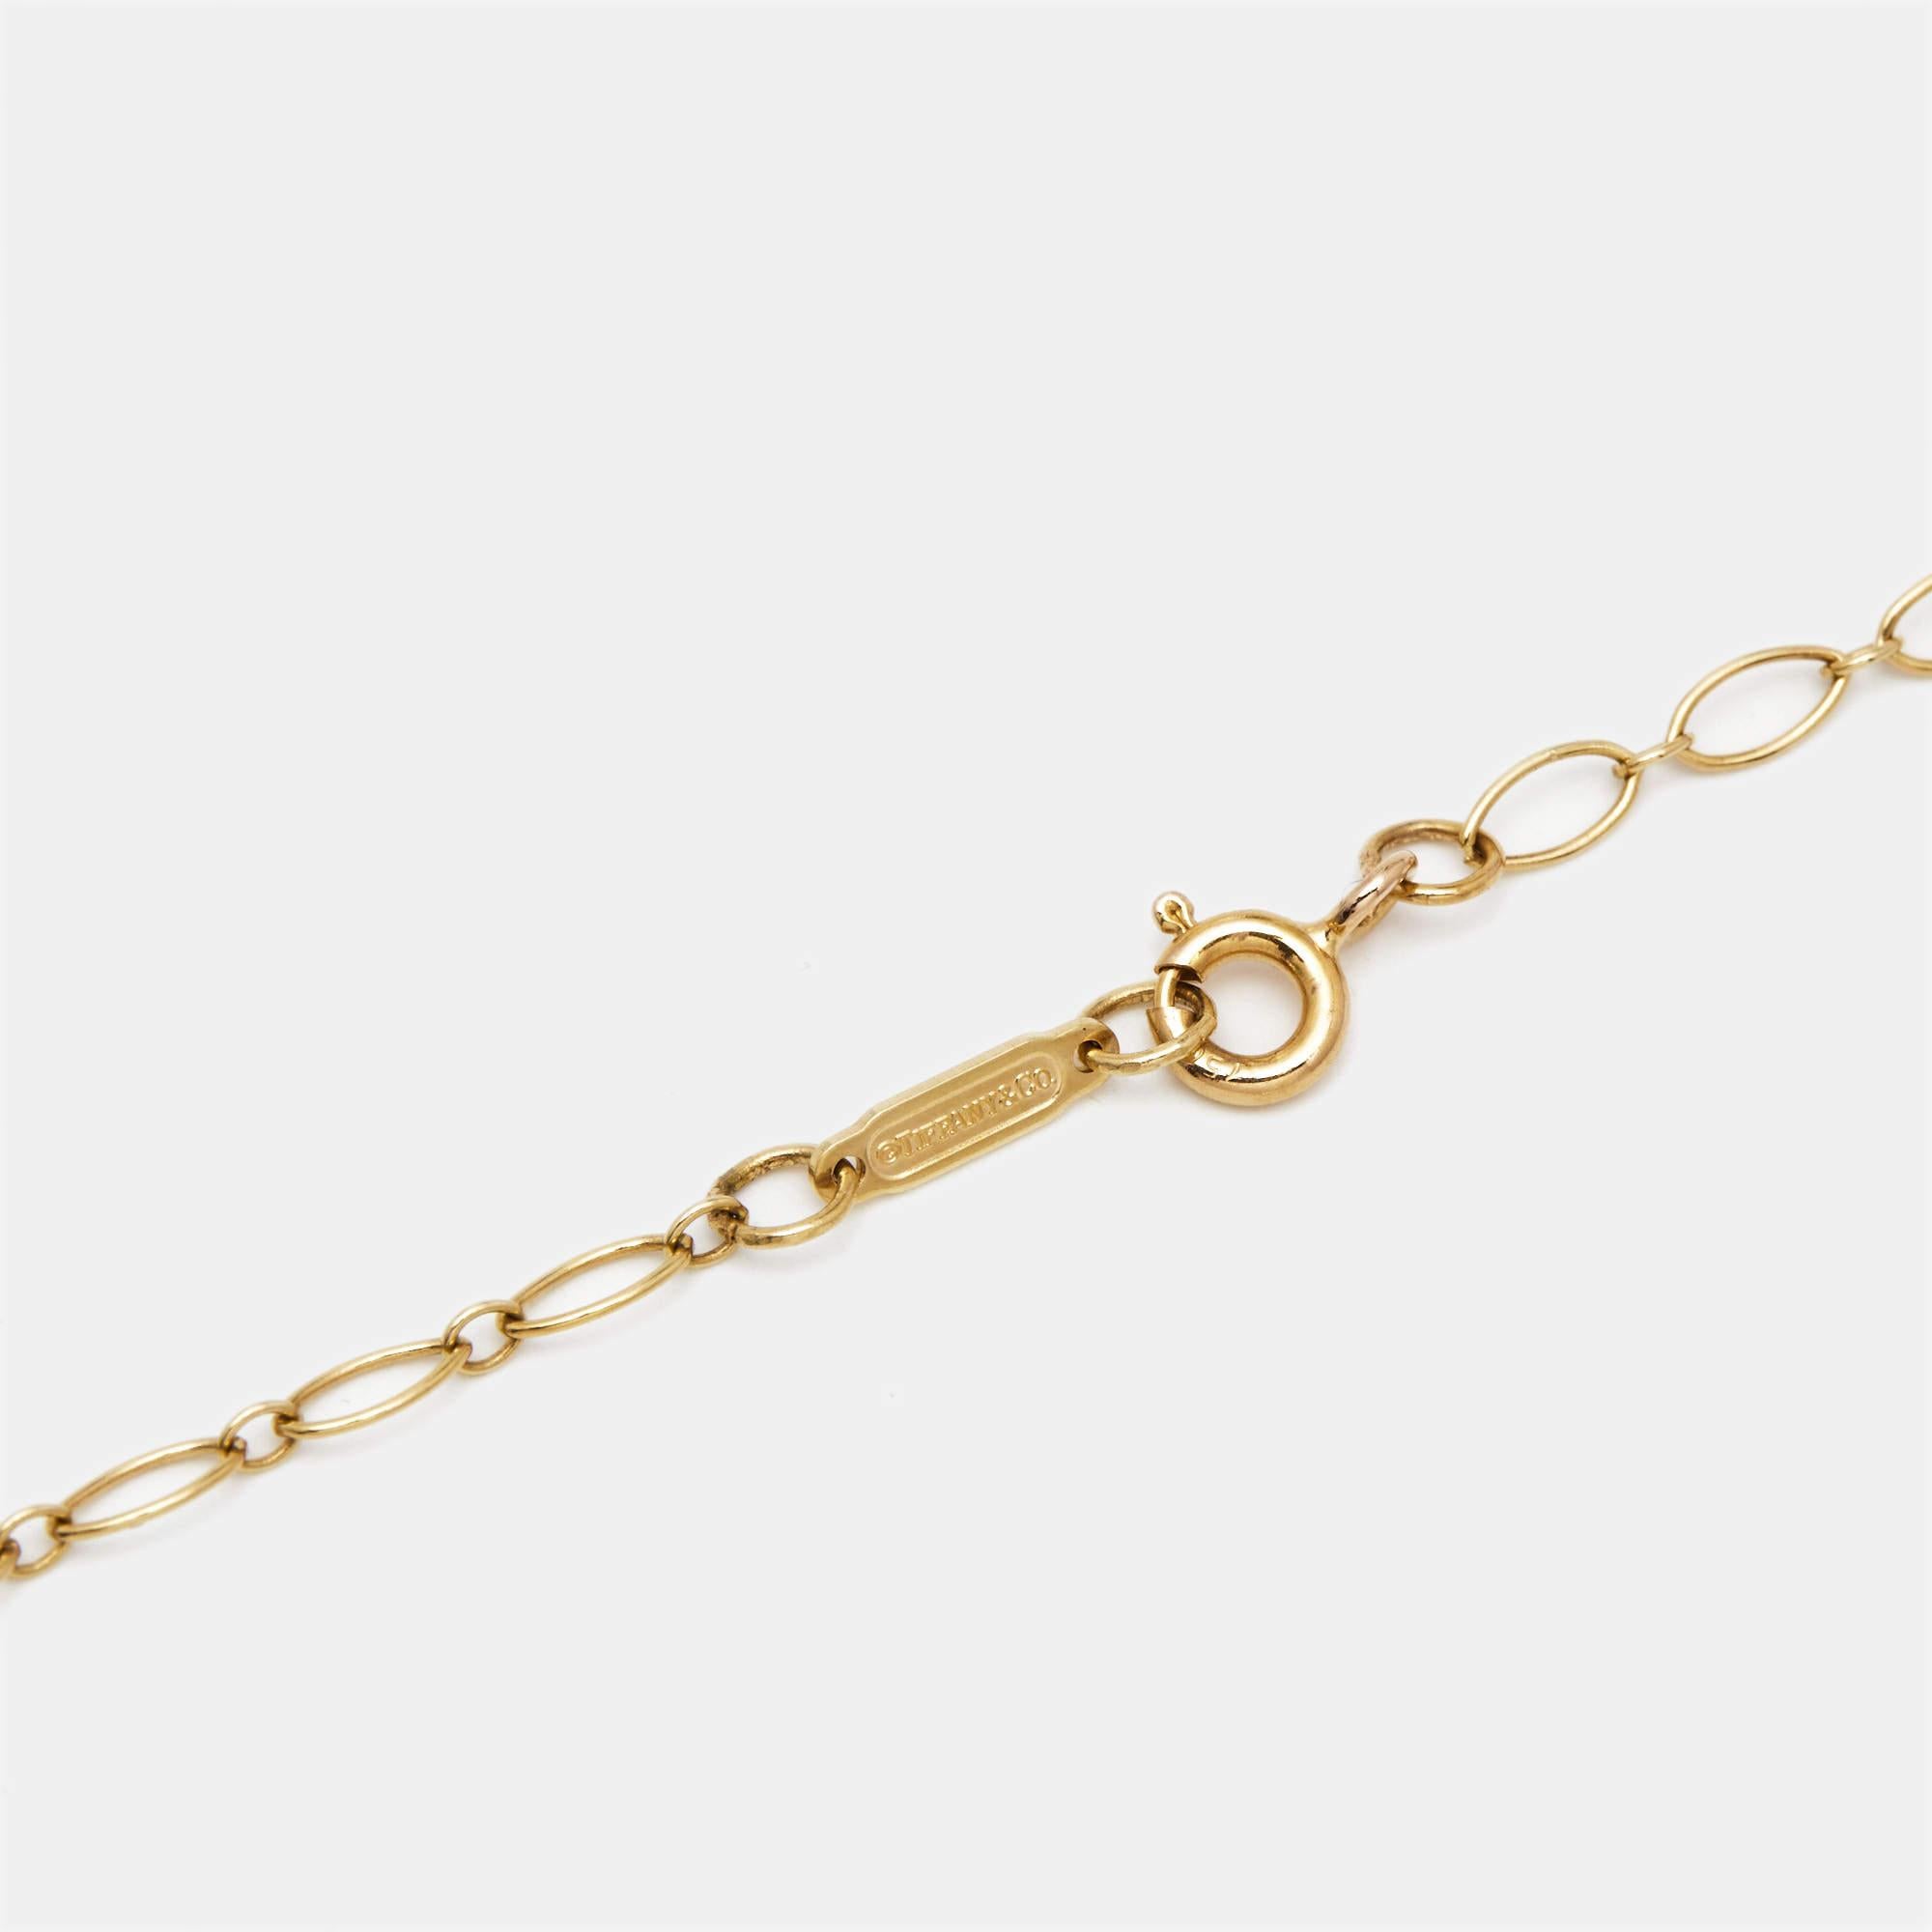 Aesthetic Movement Tiffany & Co. Tiffany Keys Daisy Diamond 18k Rose Gold Long Pendant Necklace